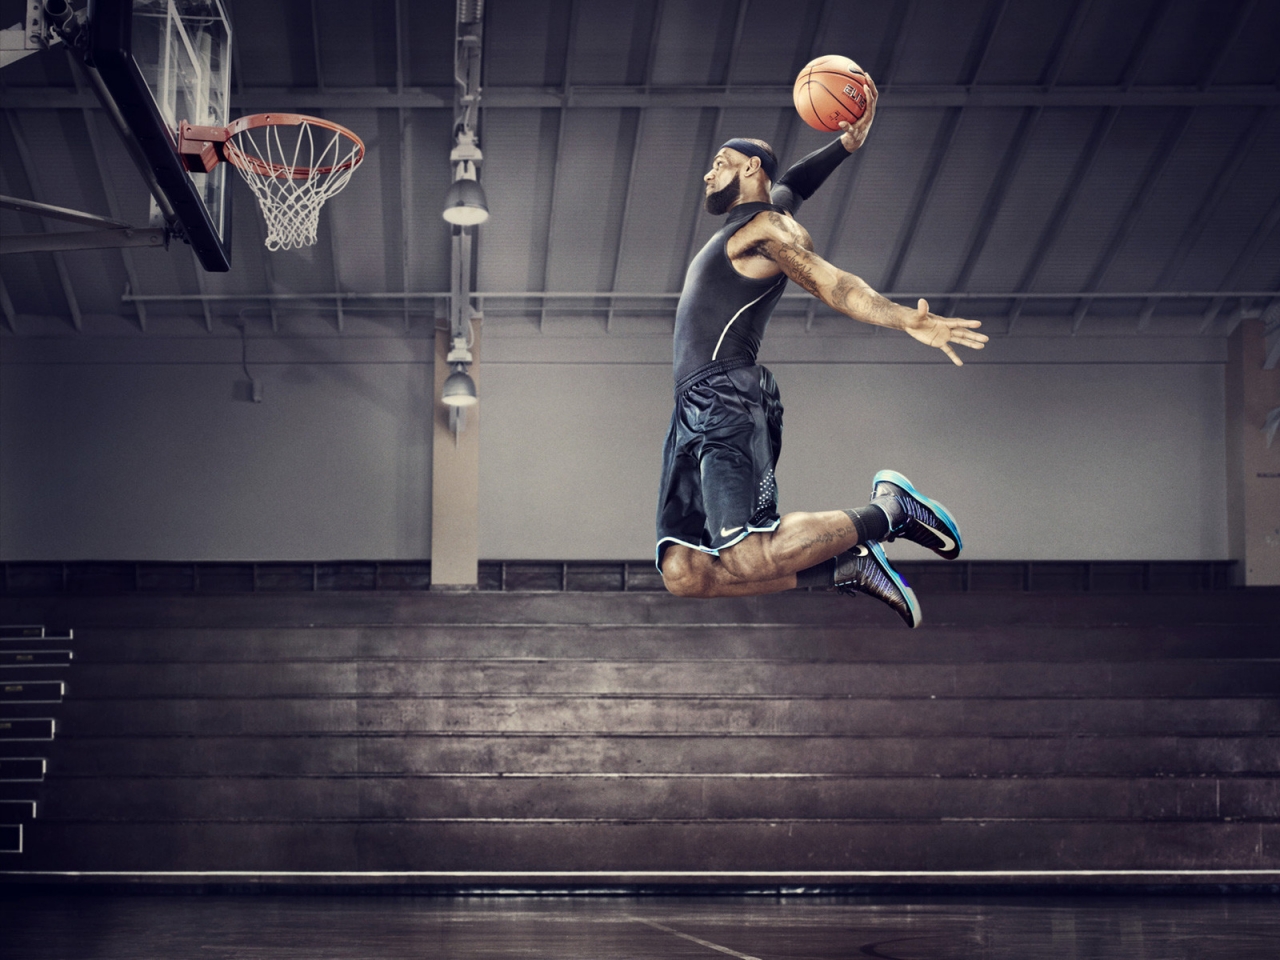 Nike Basketball for 1280 x 960 resolution